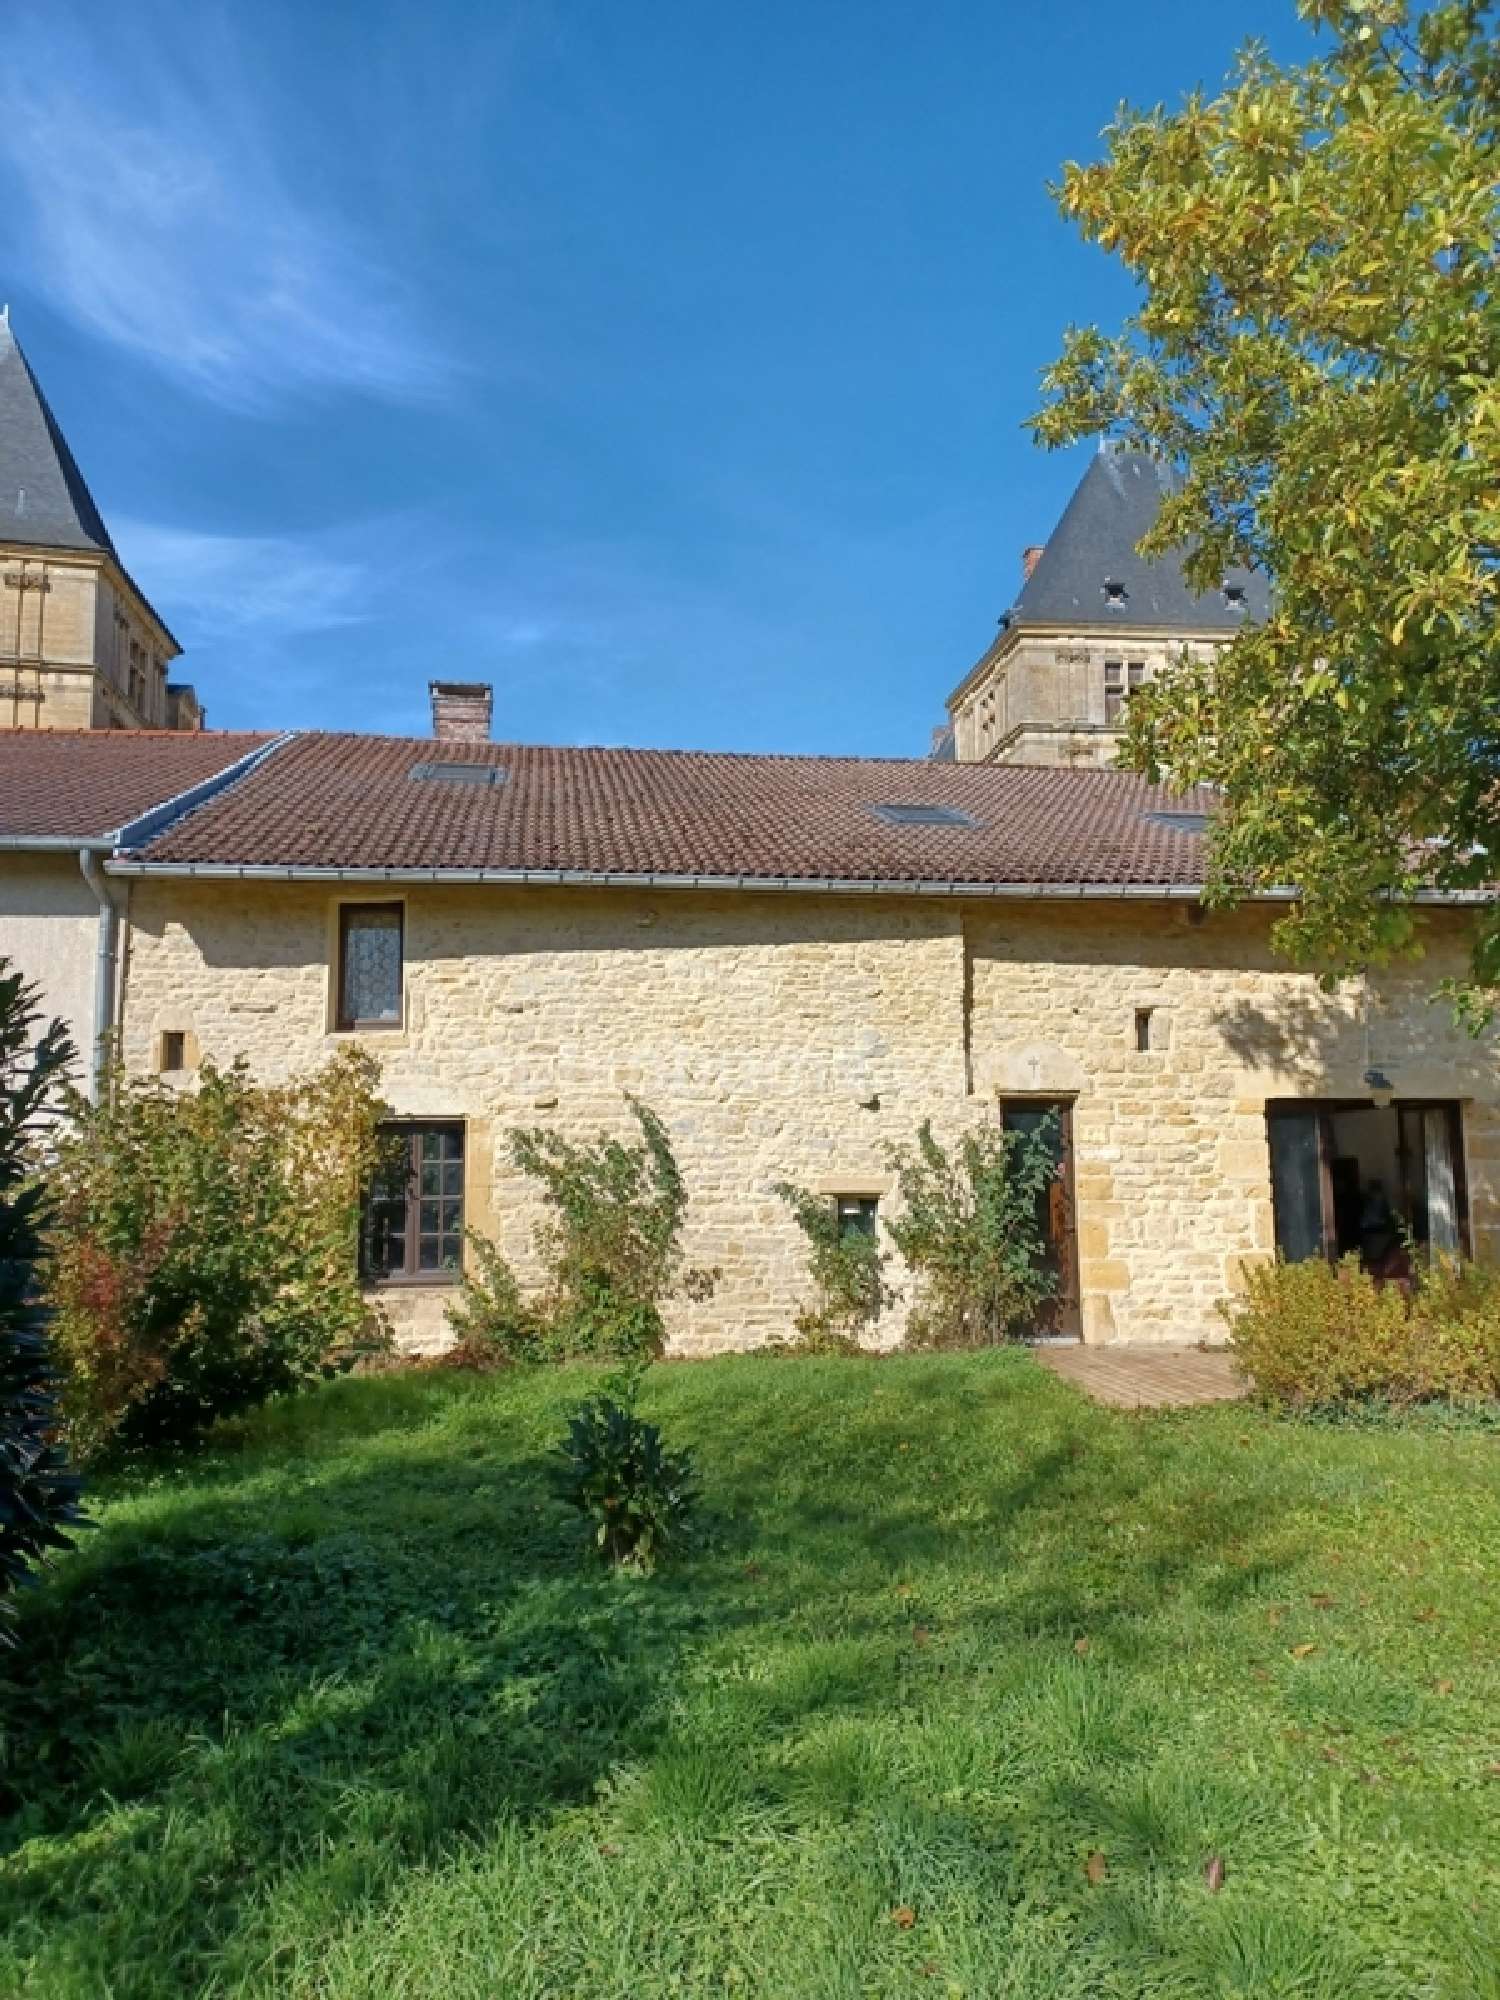  for sale village house Louppy-sur-Loison Meuse 1